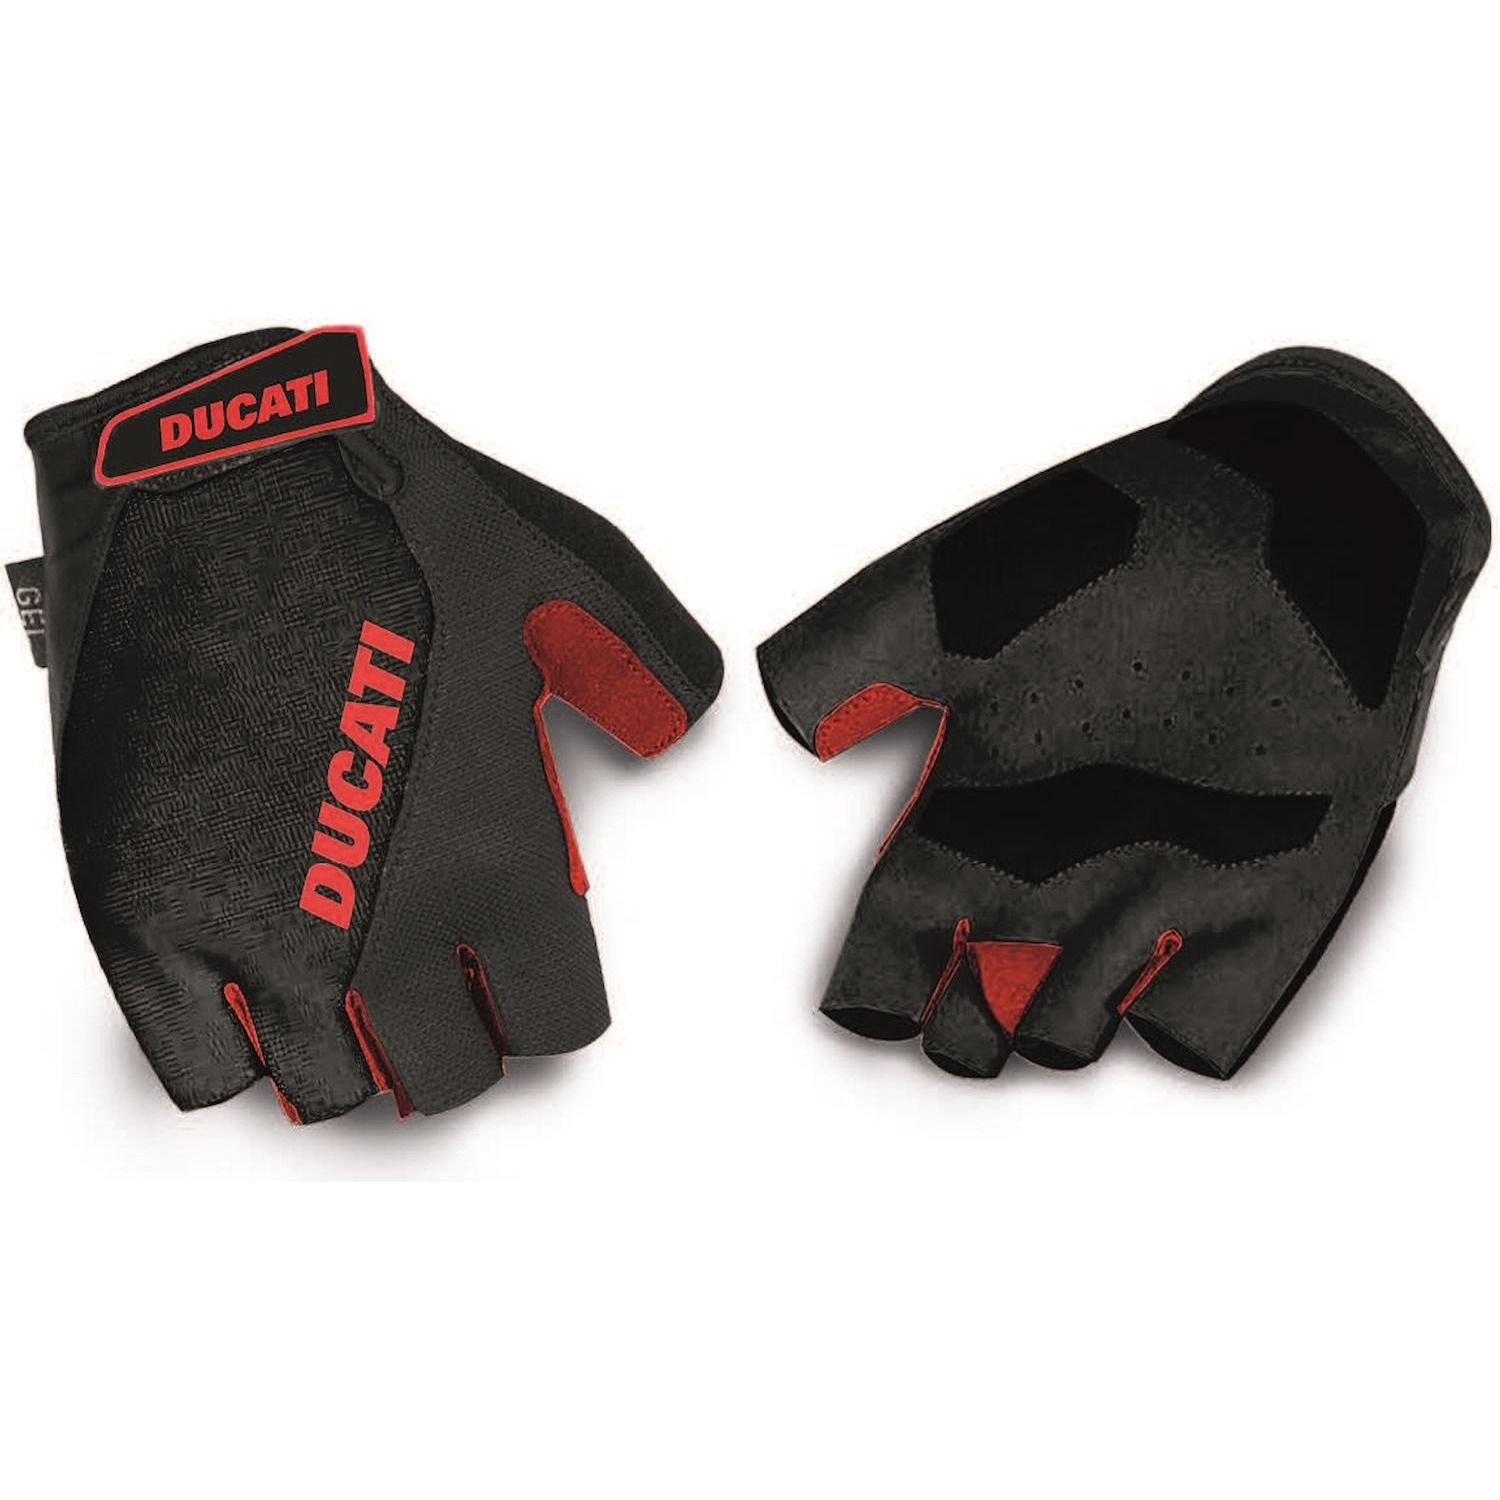 Immagine per Ducati Gel-Padded Gloves Black (Guanti per E-Bike) da DIMOStore